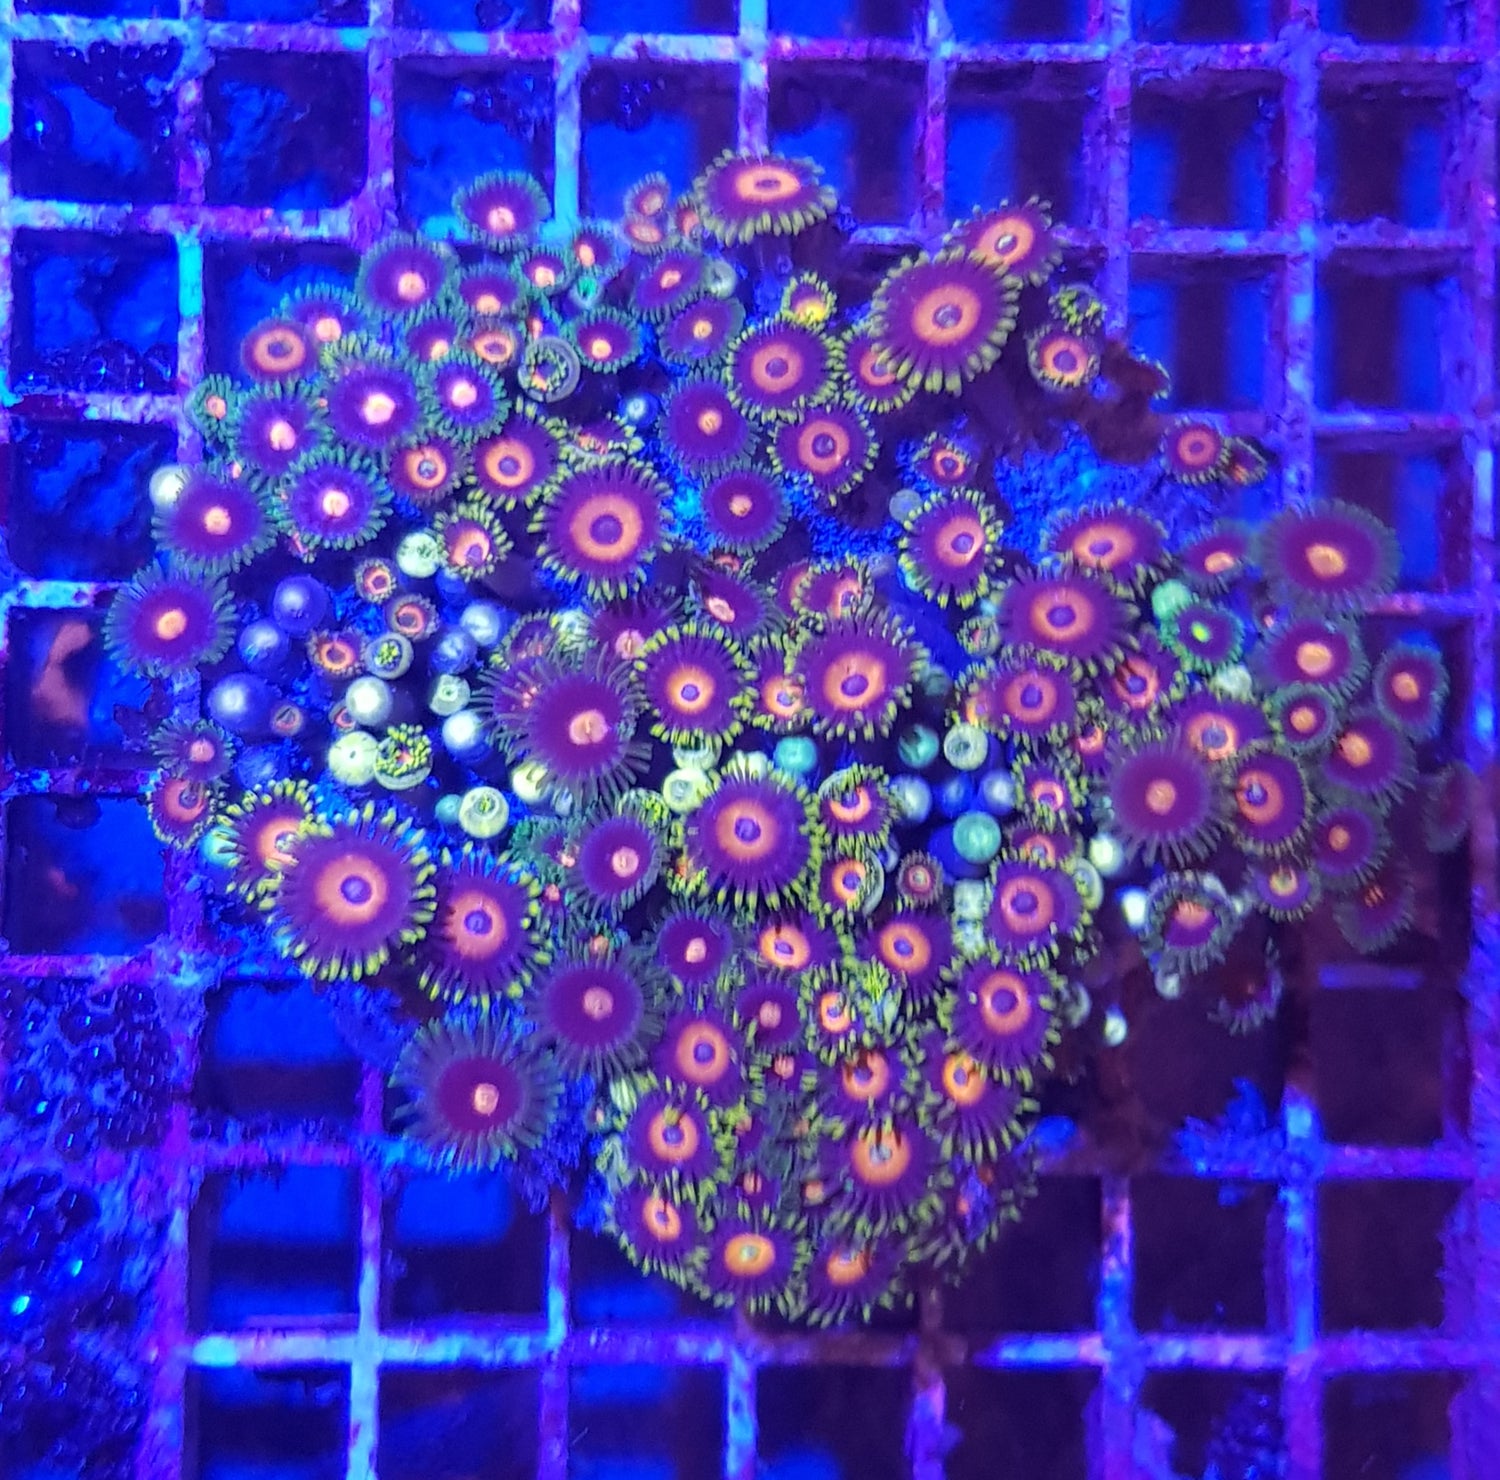 Softkorallen unter Blaulicht mit Filter